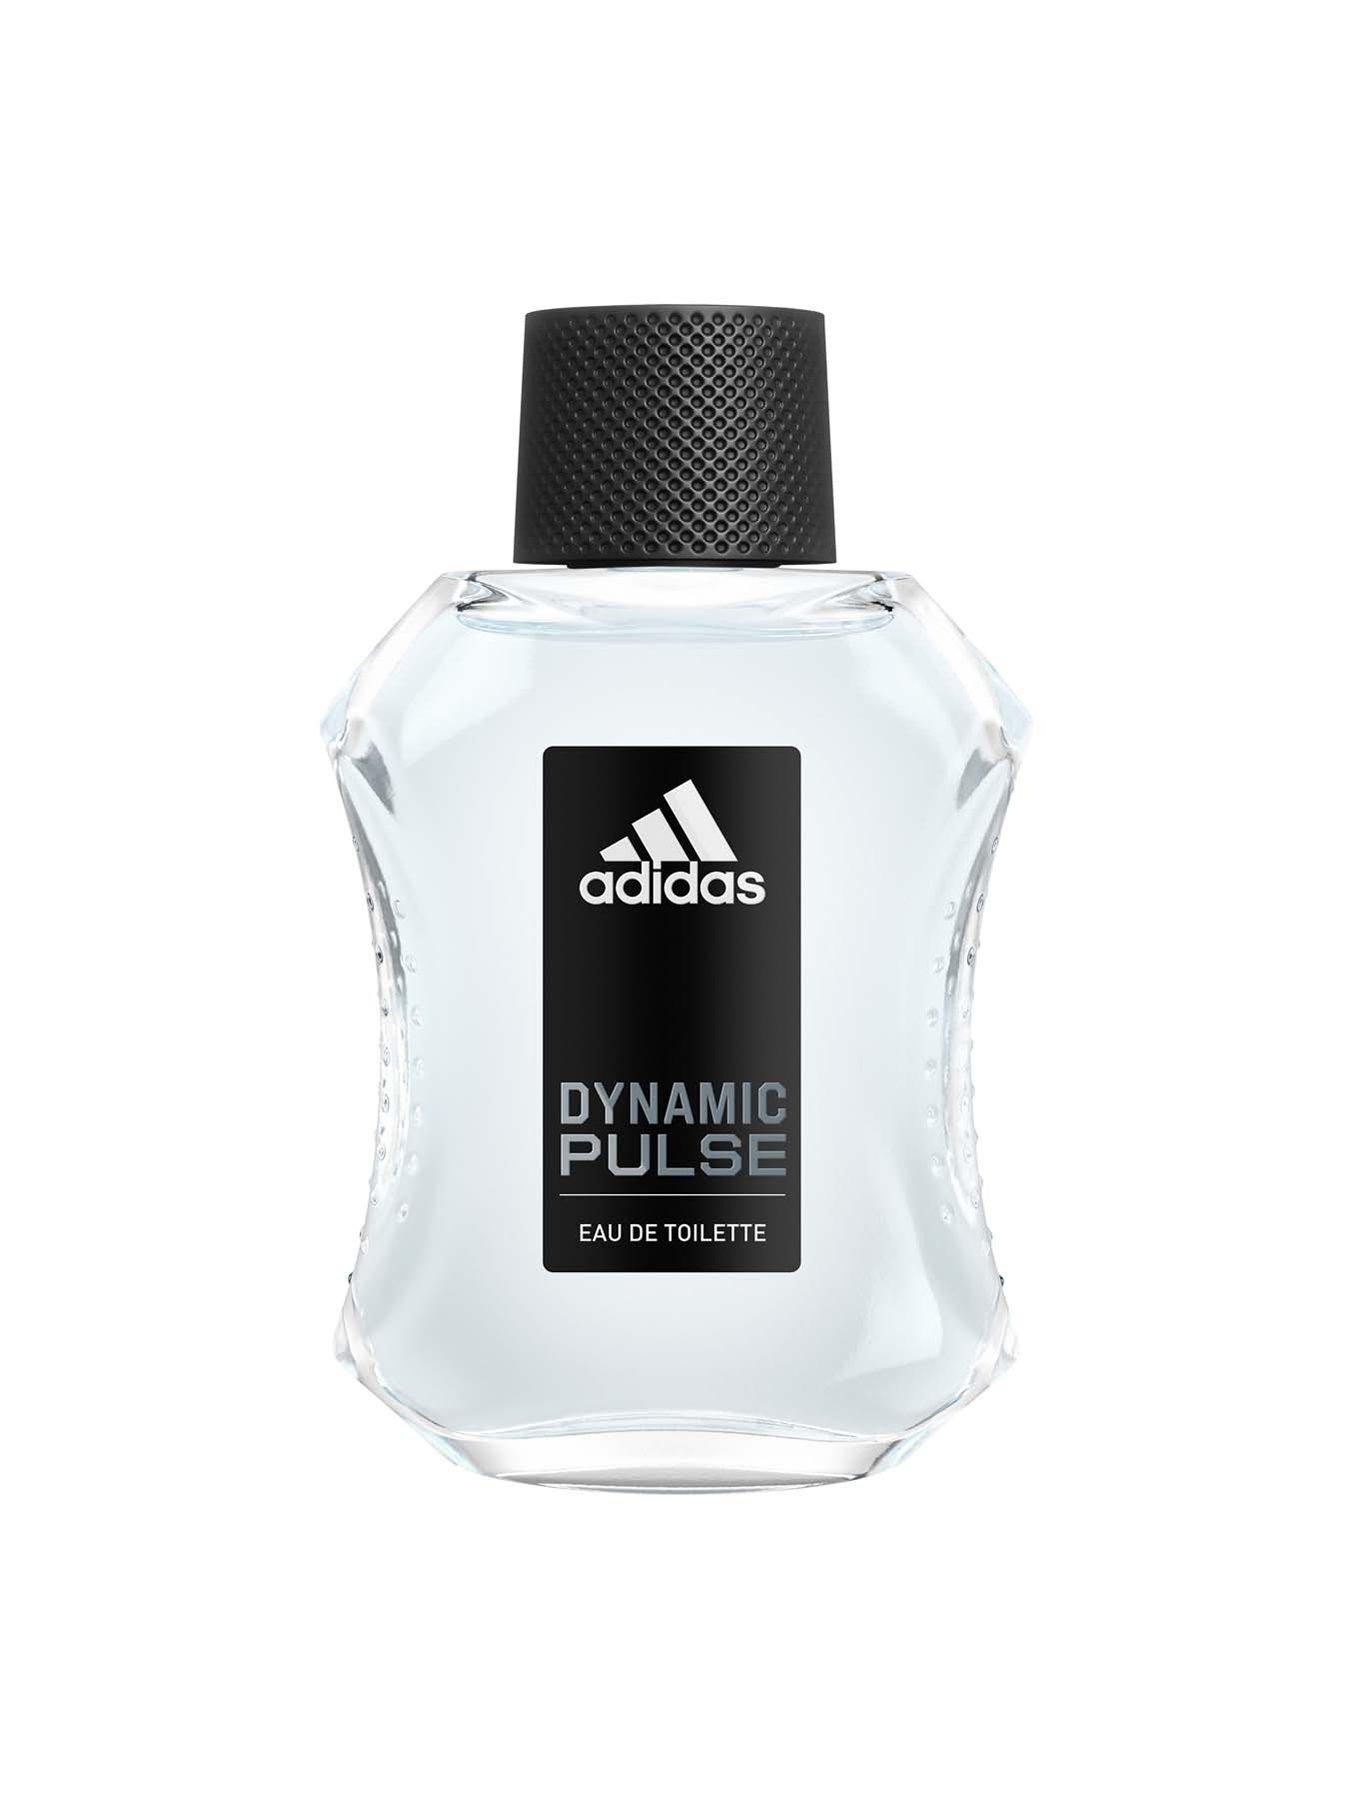 Banco de iglesia Convencional dolor de estómago adidas Adidas Dynamic Pulse 100ml Aftershave | Very Ireland